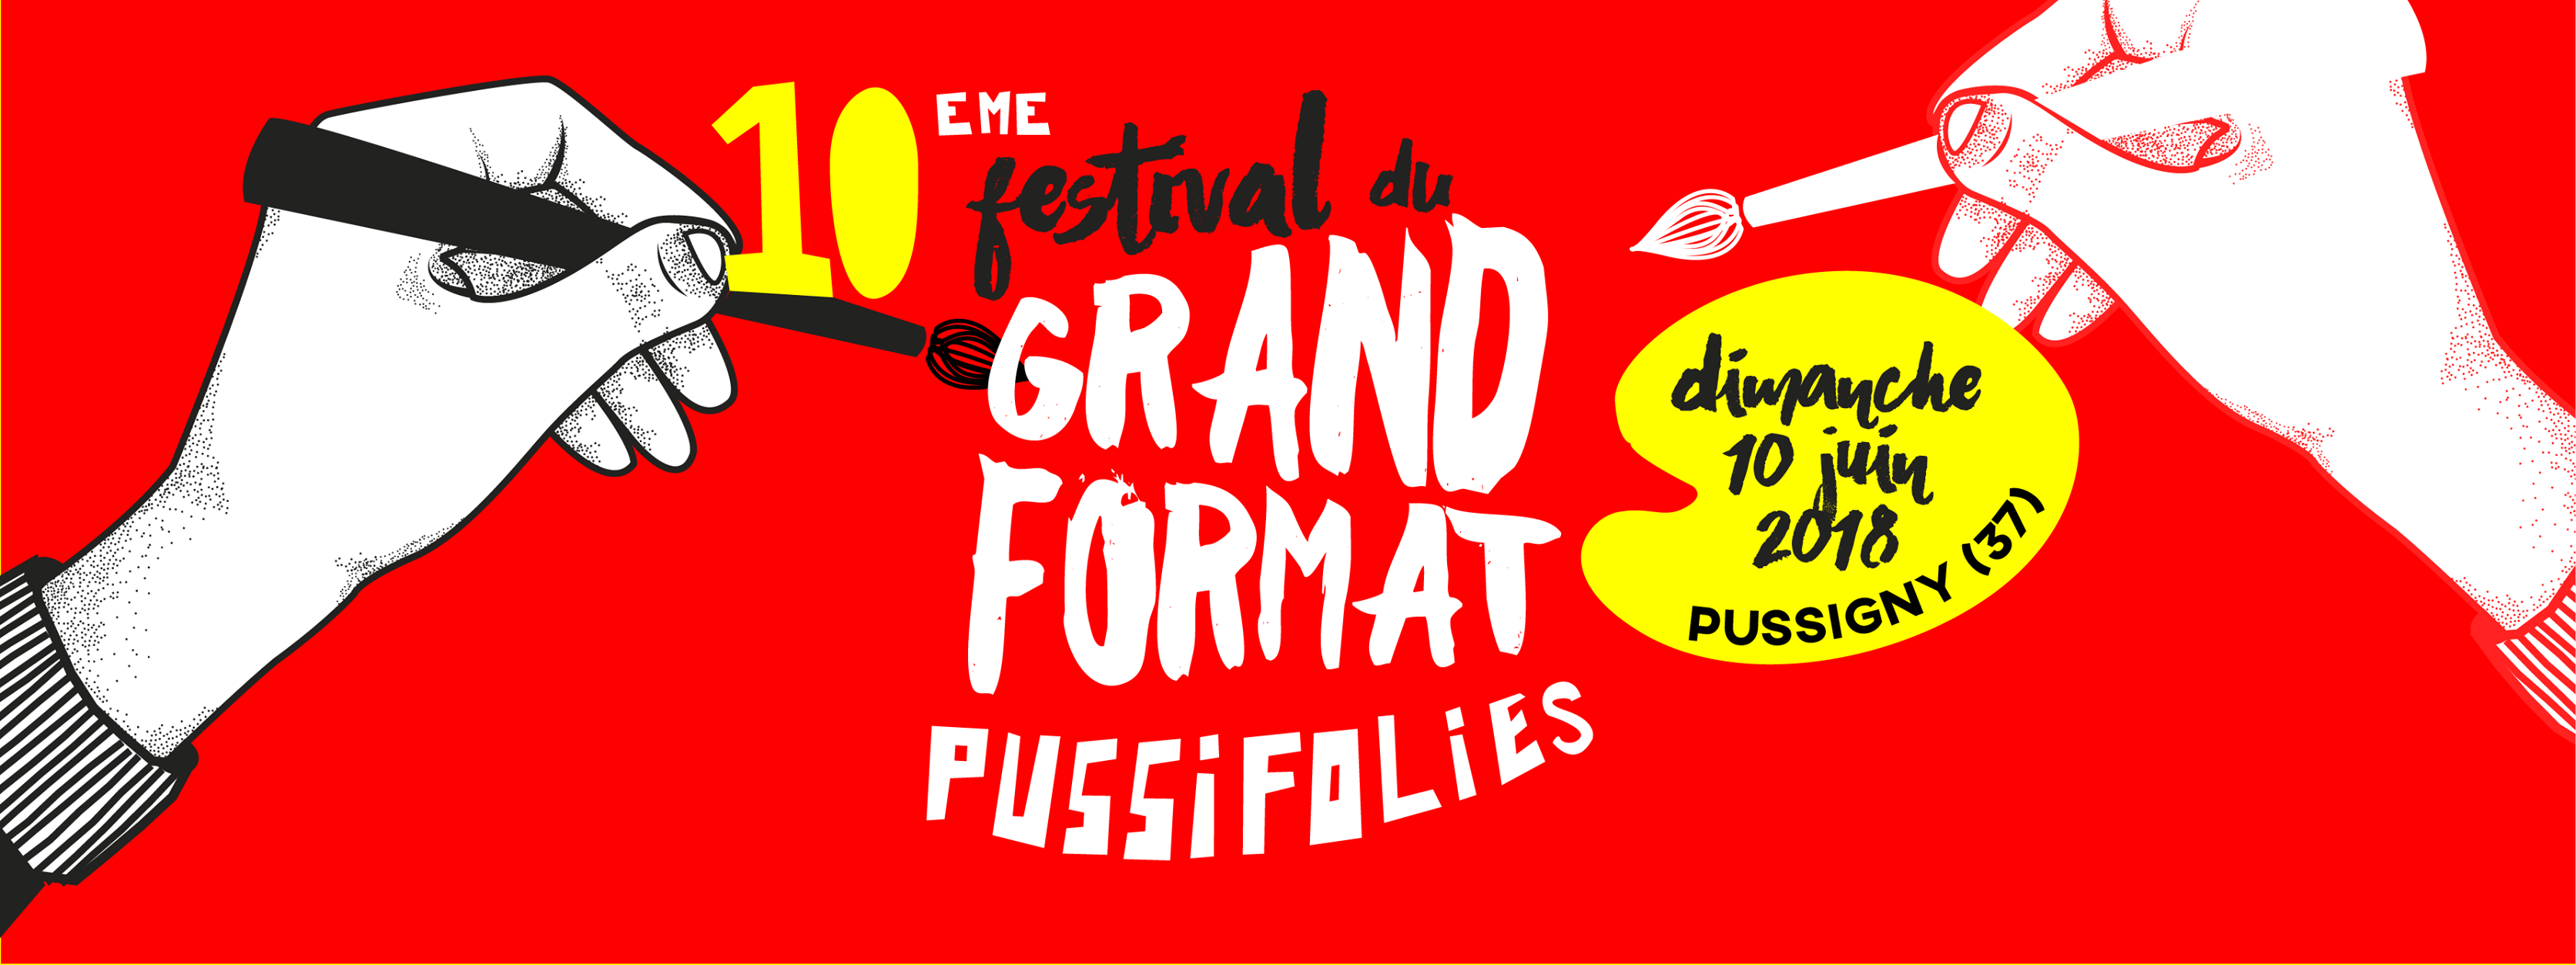 Les Pussifolies, Festival des Grands Formats